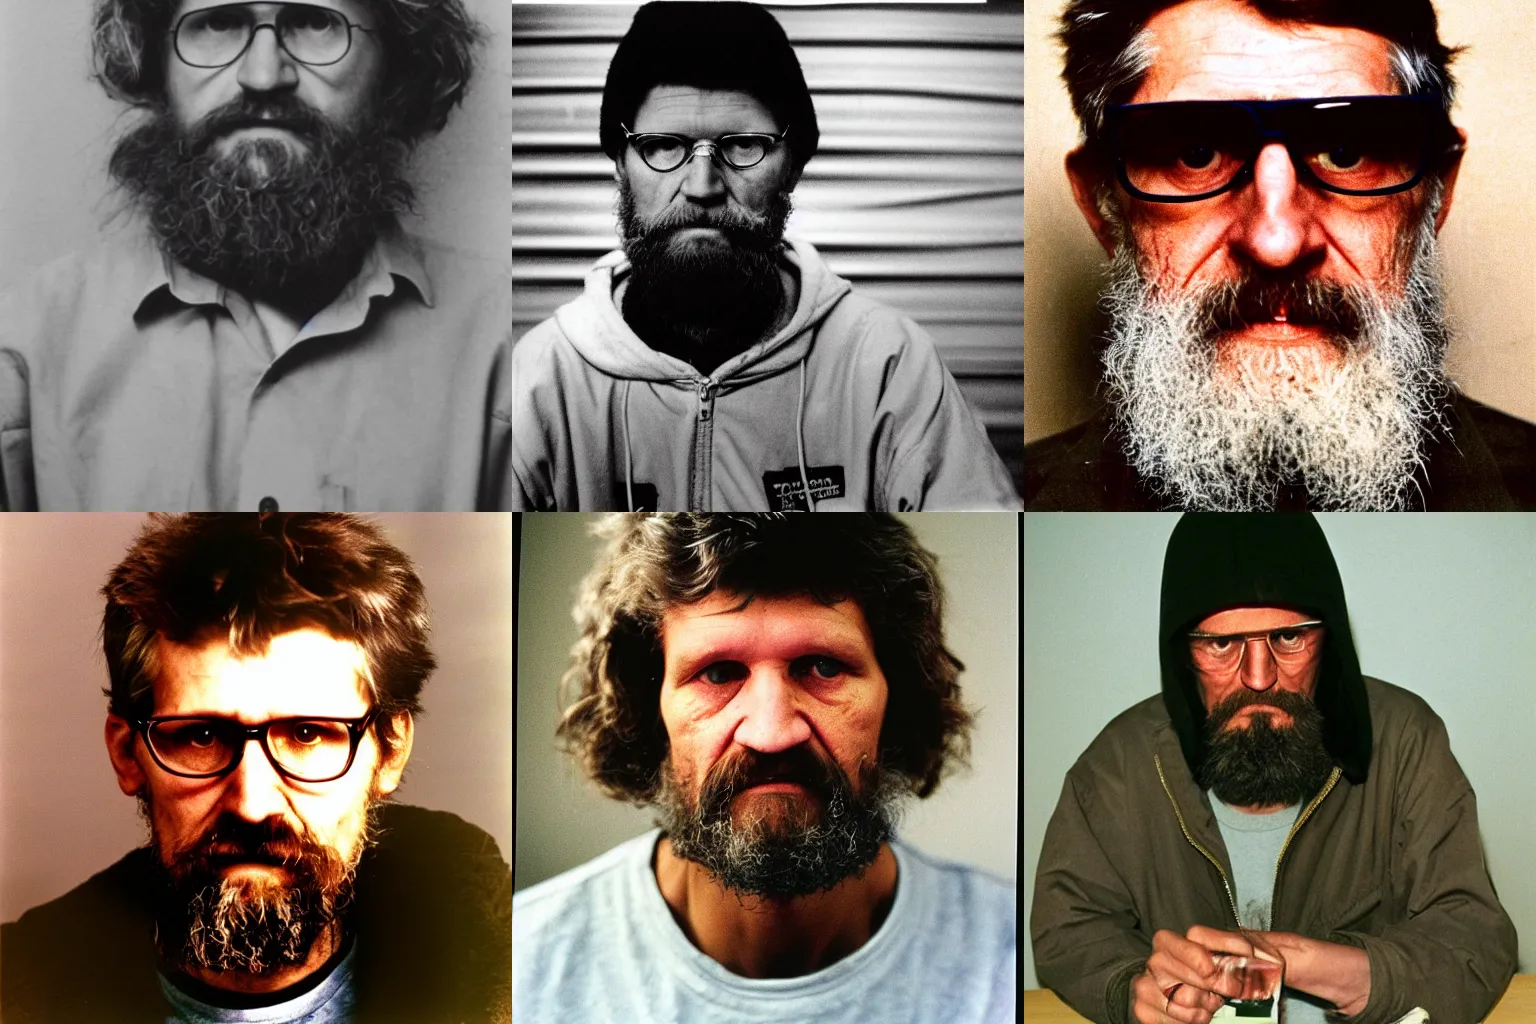 Prompt: kodachrome photo of ted Kaczynski unabomber portrait